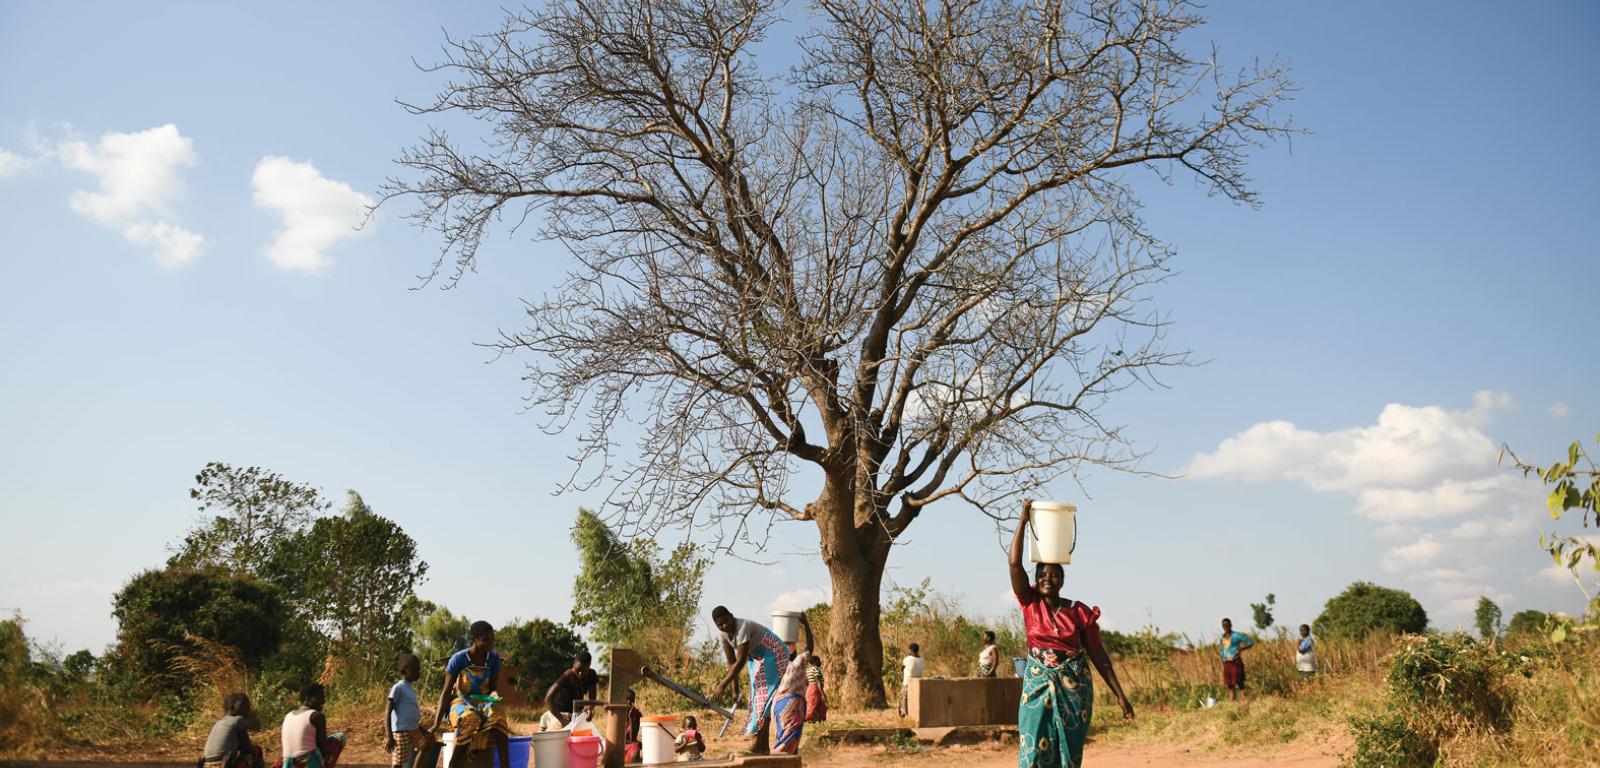 Mieszkańcy wioski Bwabwa w północnym Malawi dzielą się nasionami, wiedzą na temat upraw oraz wspólnie pracują przy zbiorach i przygotowywaniu żywności.